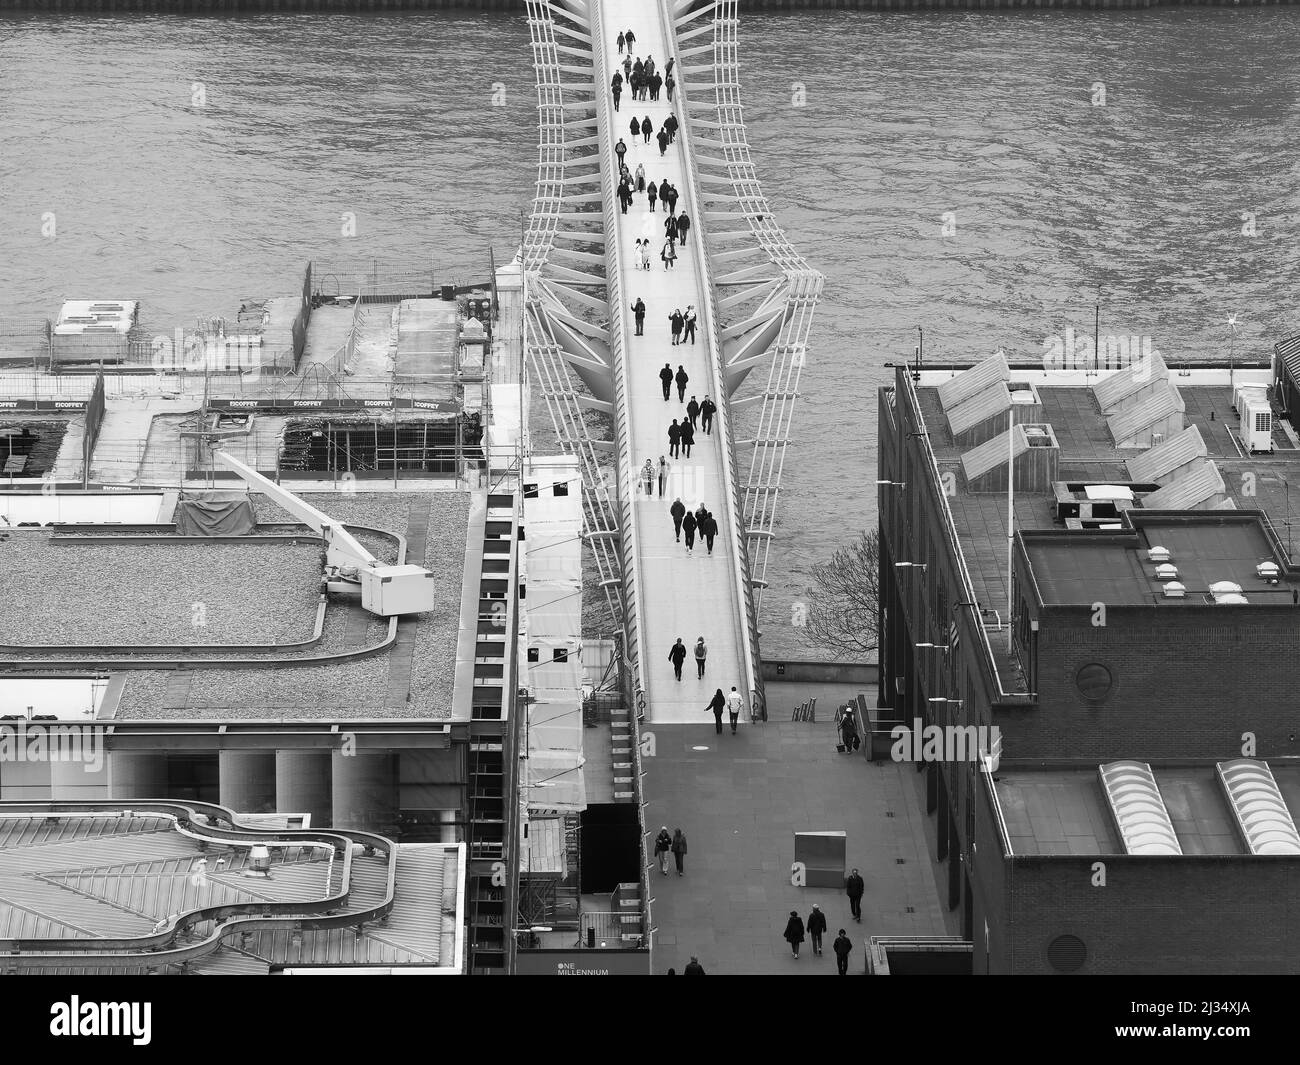 Londres, Grand Londres, Angleterre, mars 29 2022 : vue aérienne du Millennium Bridge, un pont piétonnier surplombant la Tamise. Monochrome. Banque D'Images